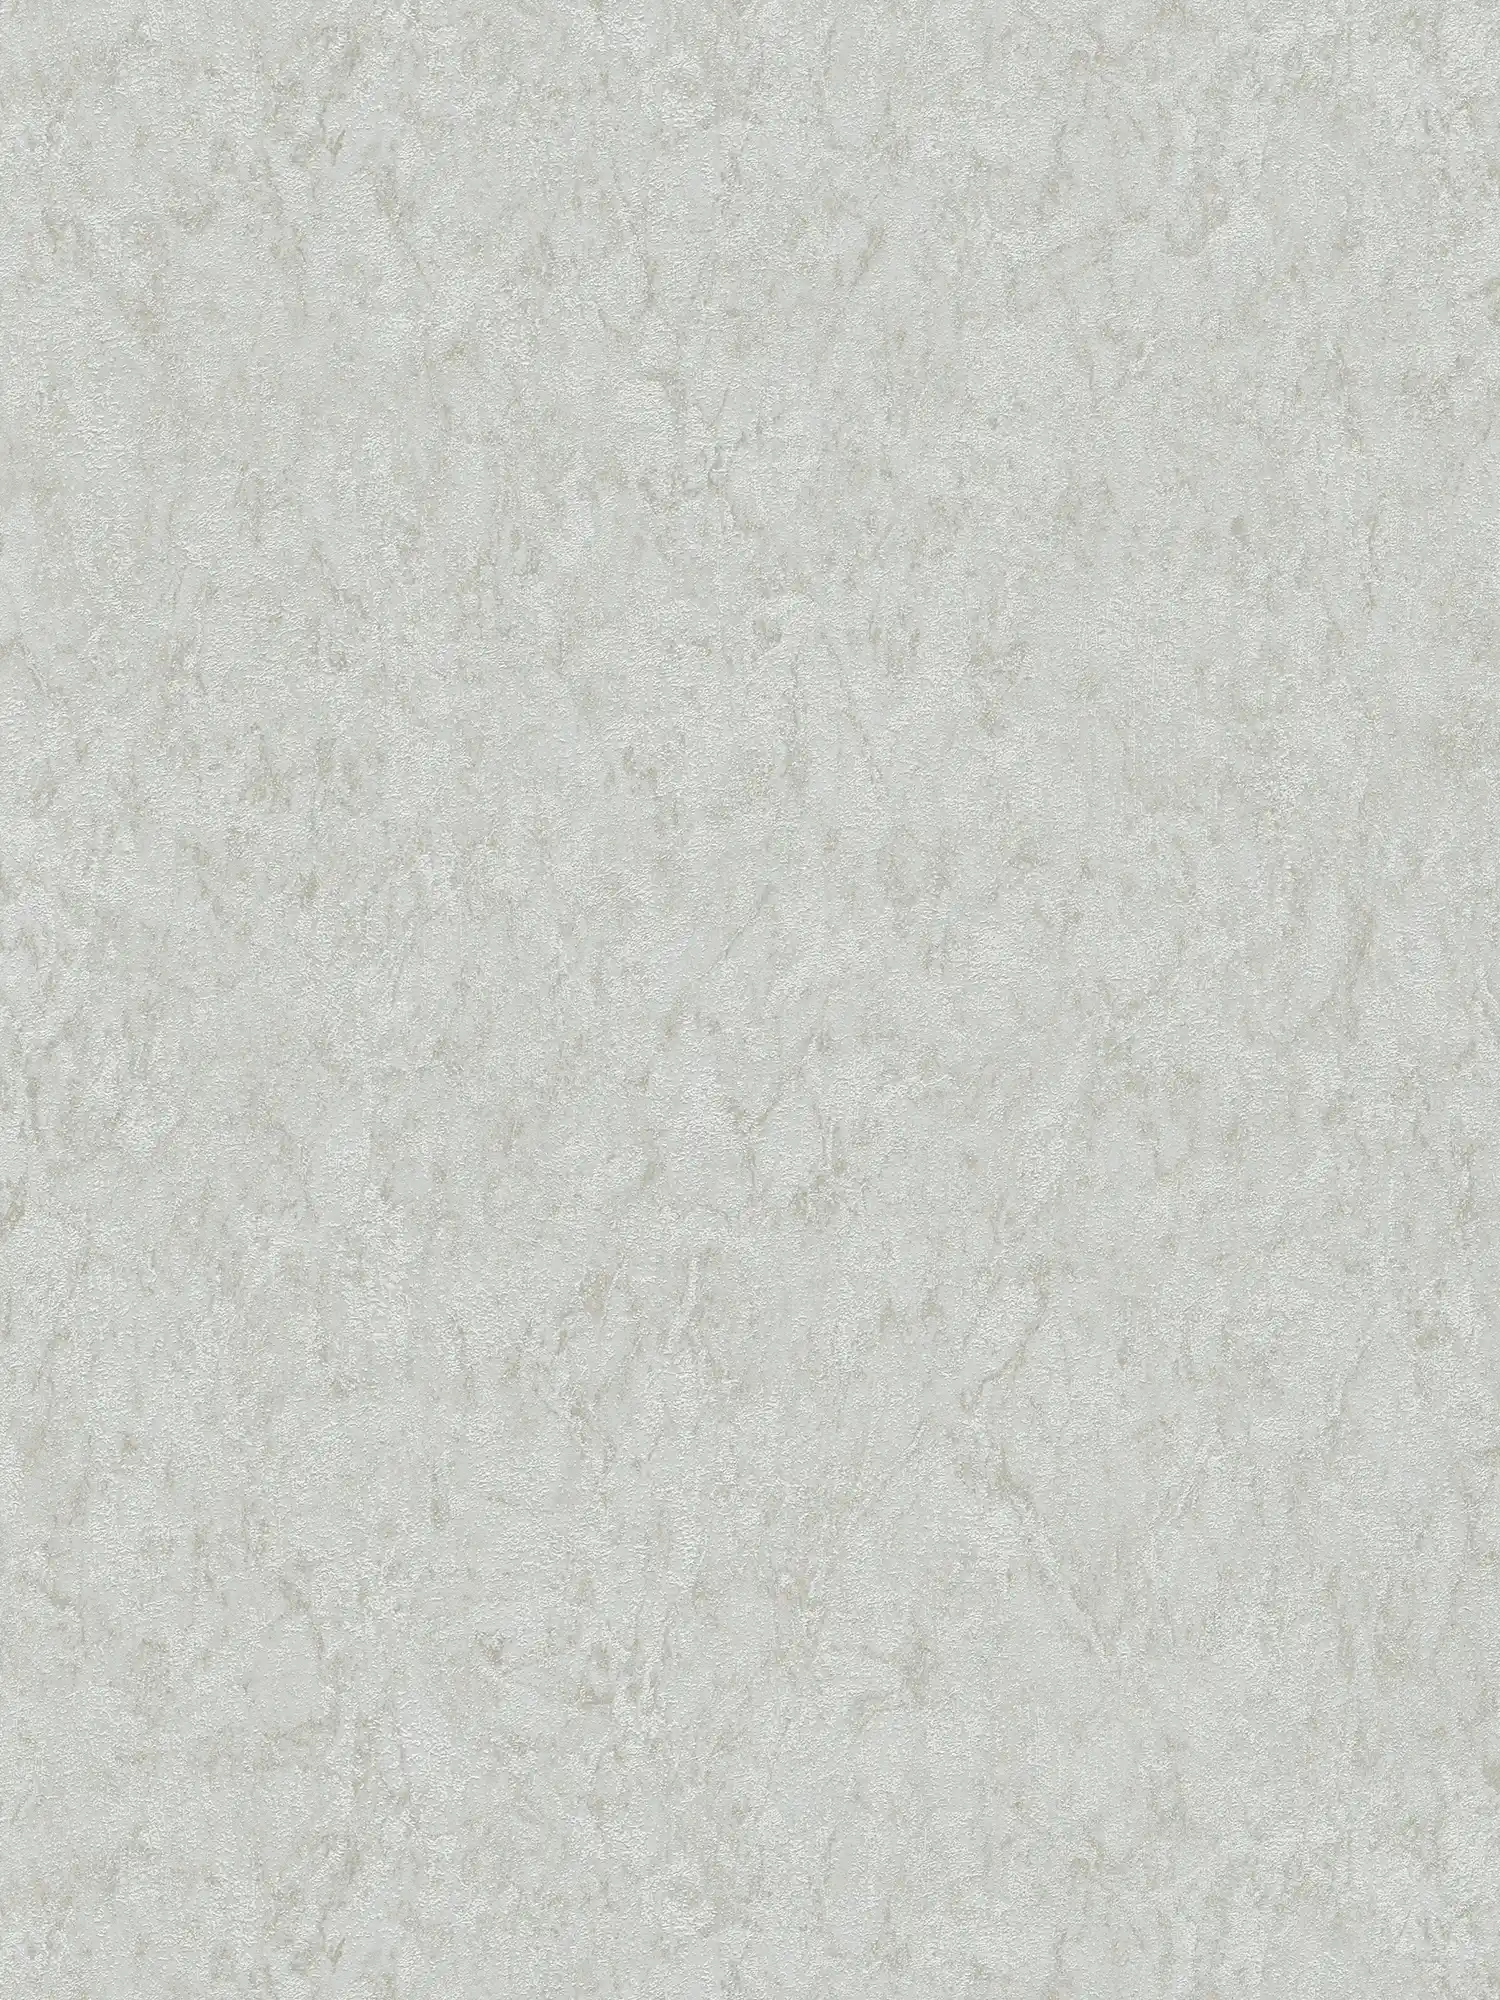 Papel pintado unitario con efecto texturizado y diseño moteado - gris, beige
